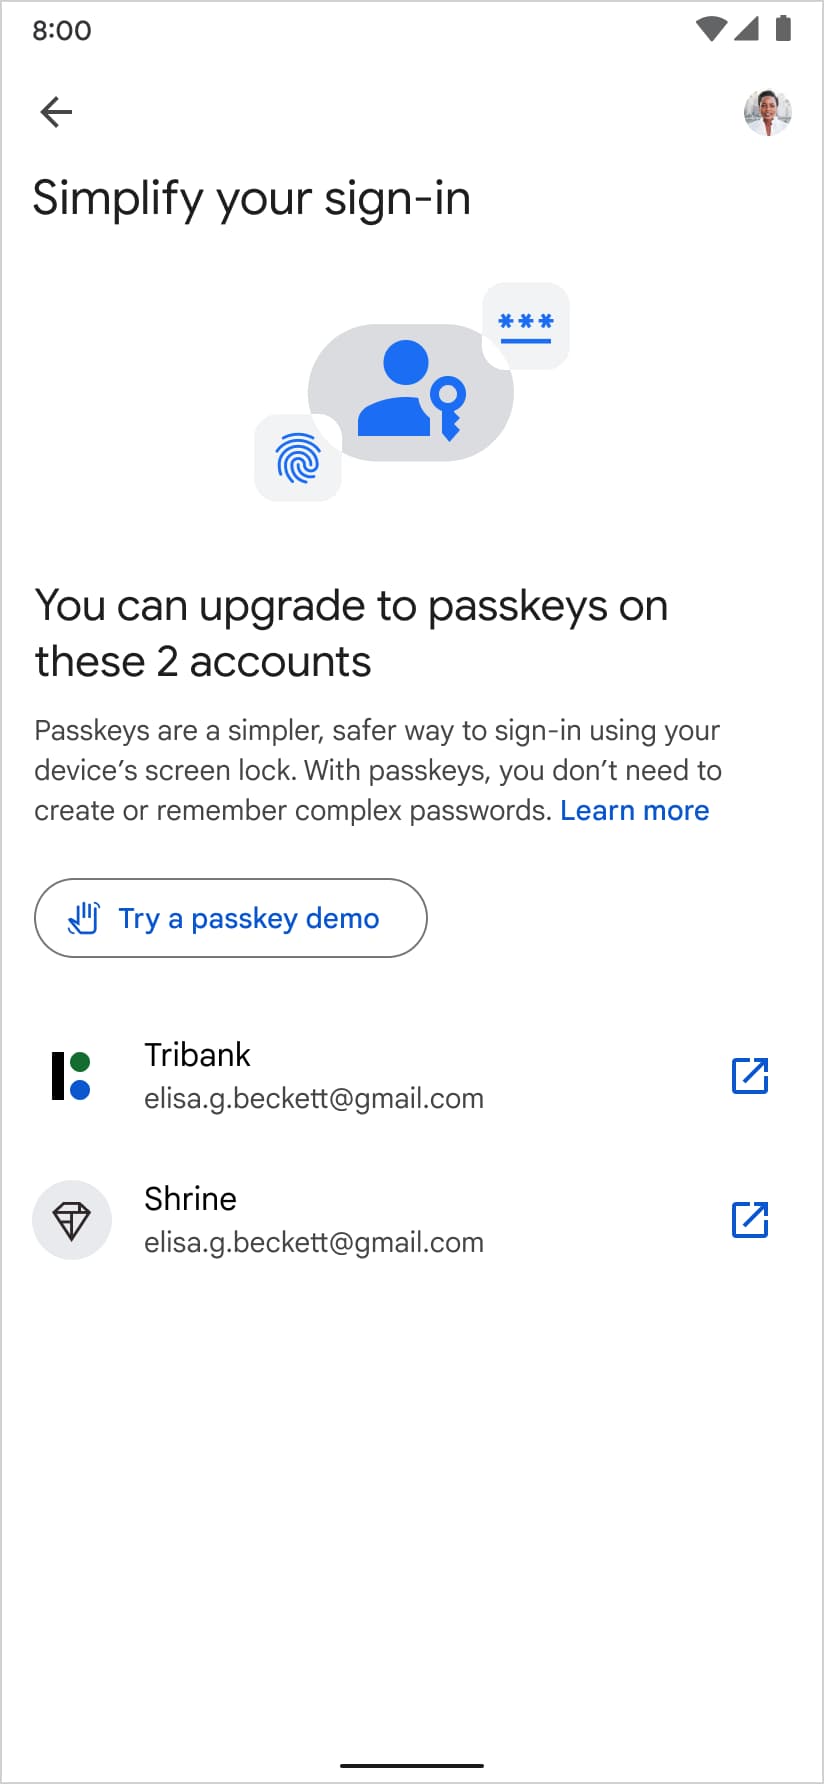 提案を承認すると、ユーザーはパスキーを作成できるドメインのリストに転送されます。エントリをタップすると、対応する登録ページにユーザーがシームレスにリダイレクトされます。